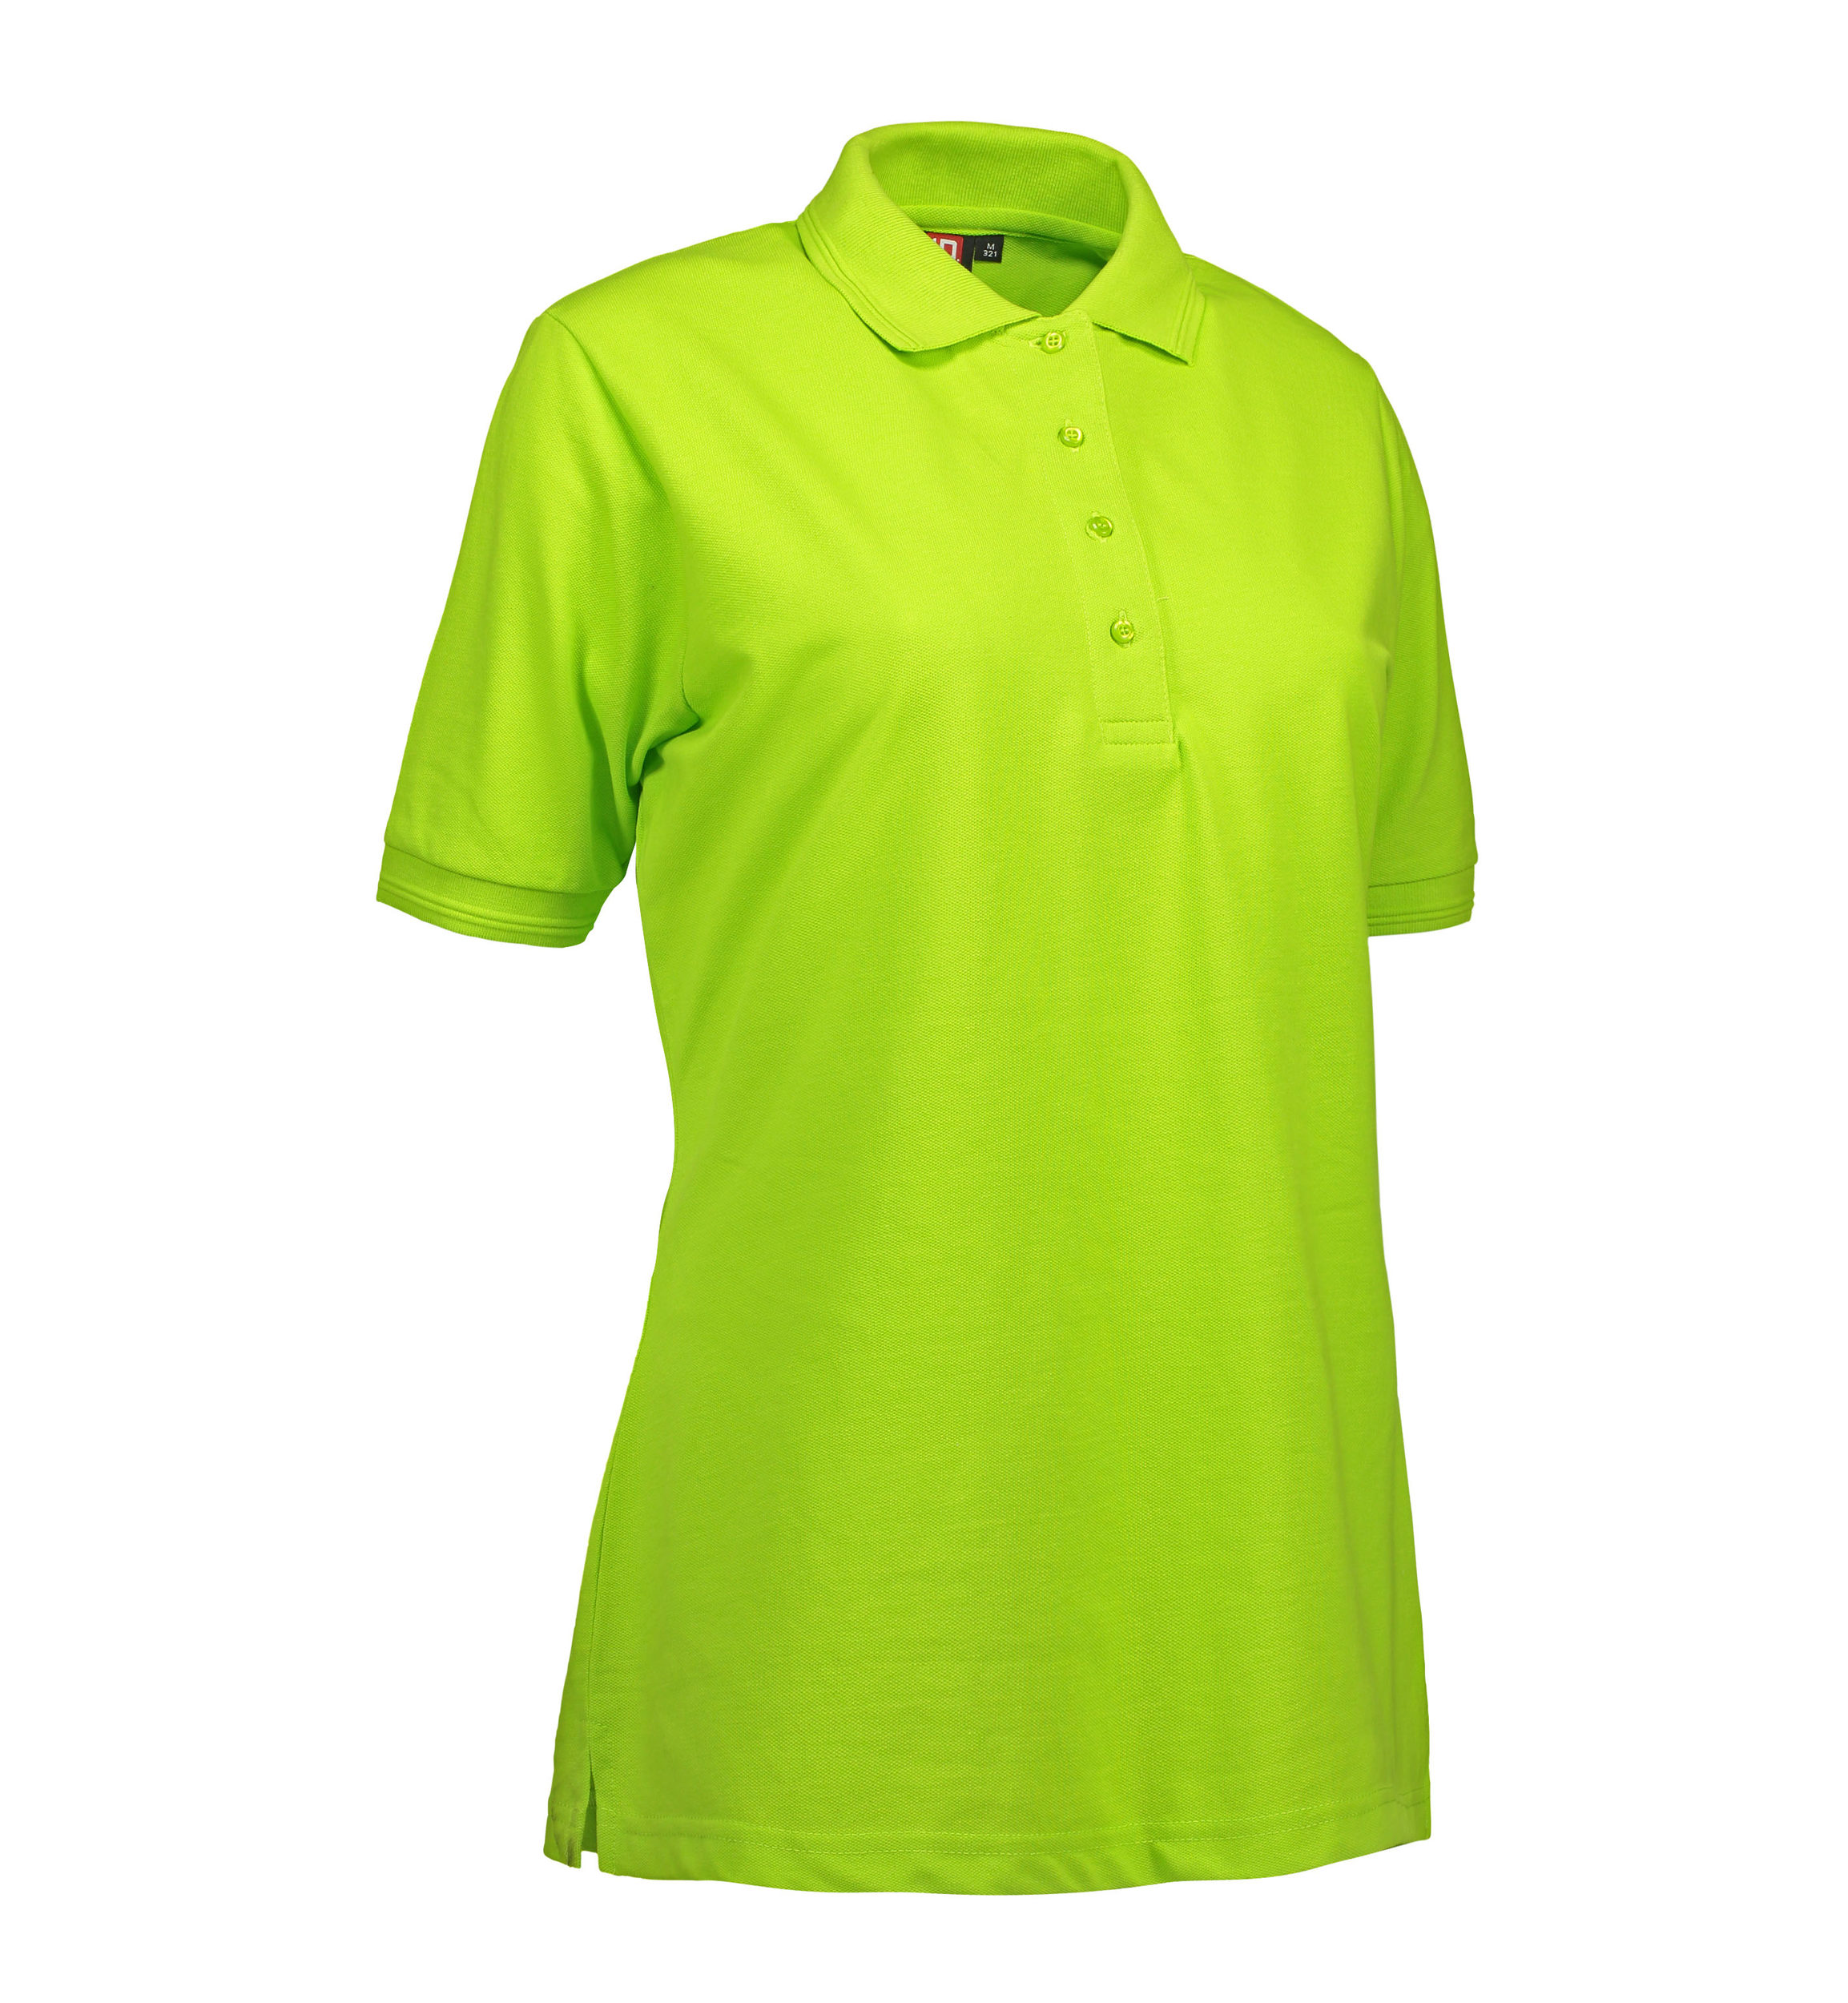 Billede af Lime farvet dame polo t-shirt i slidstærkt materiale - XS hos Sygeplejebutikken.dk